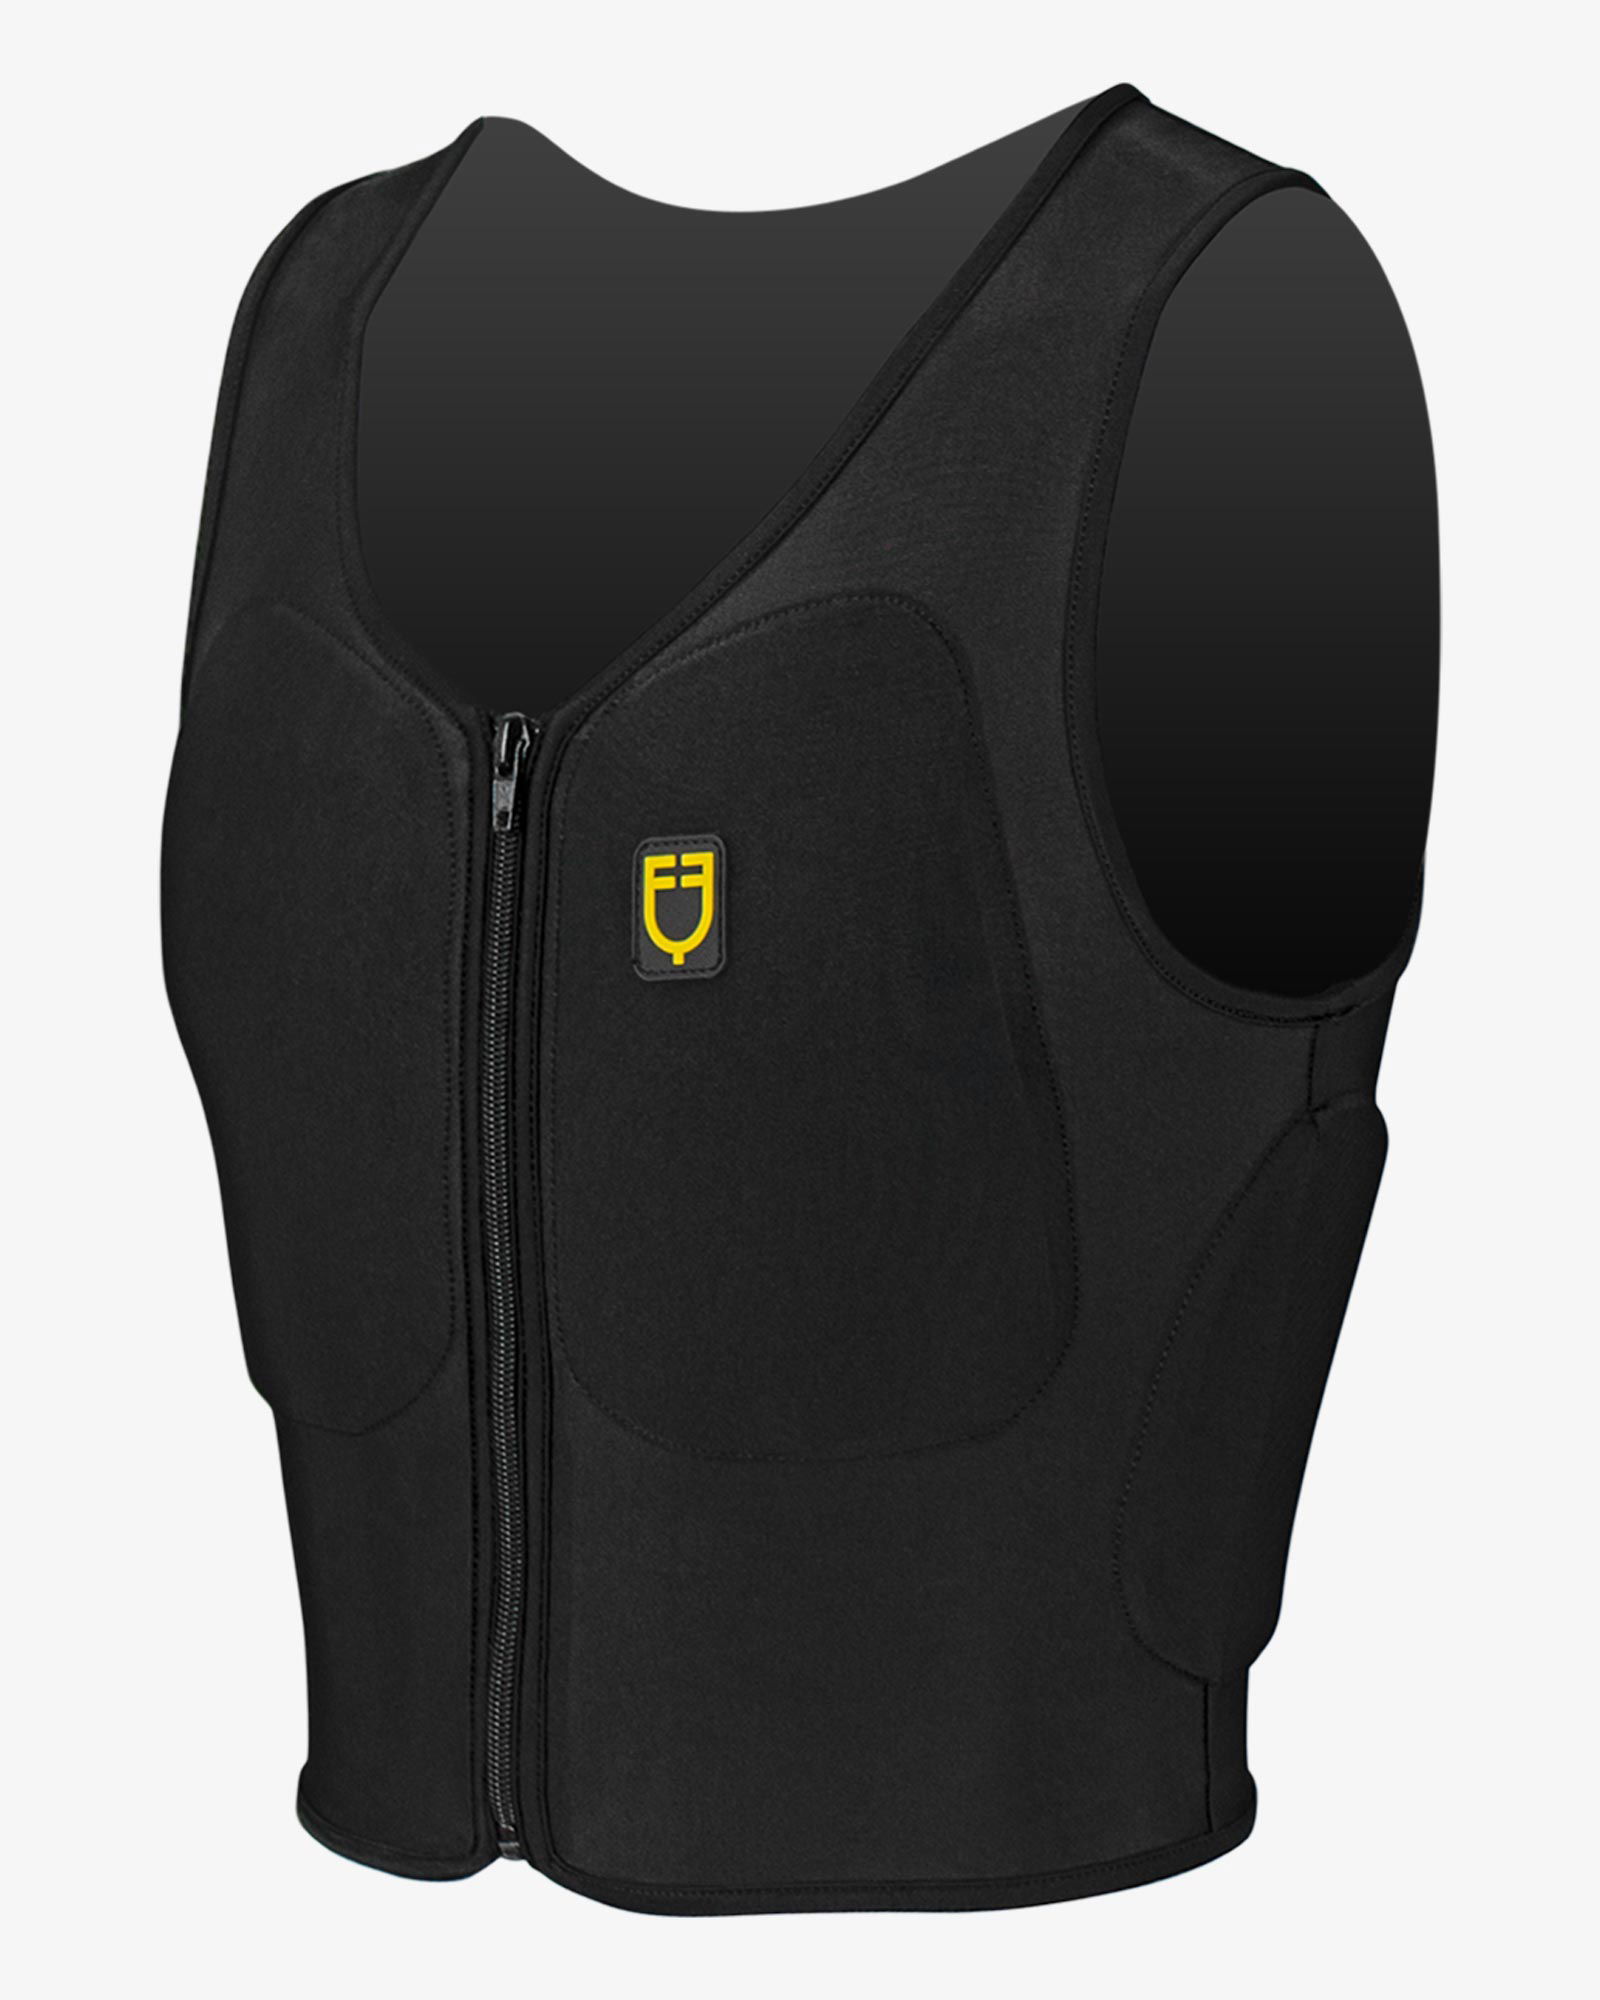 PROMOZIONE Gilet adulti salvaschiena Safety vest Pro Adult con protezione laterale per equitazione X7A XS - foto 6